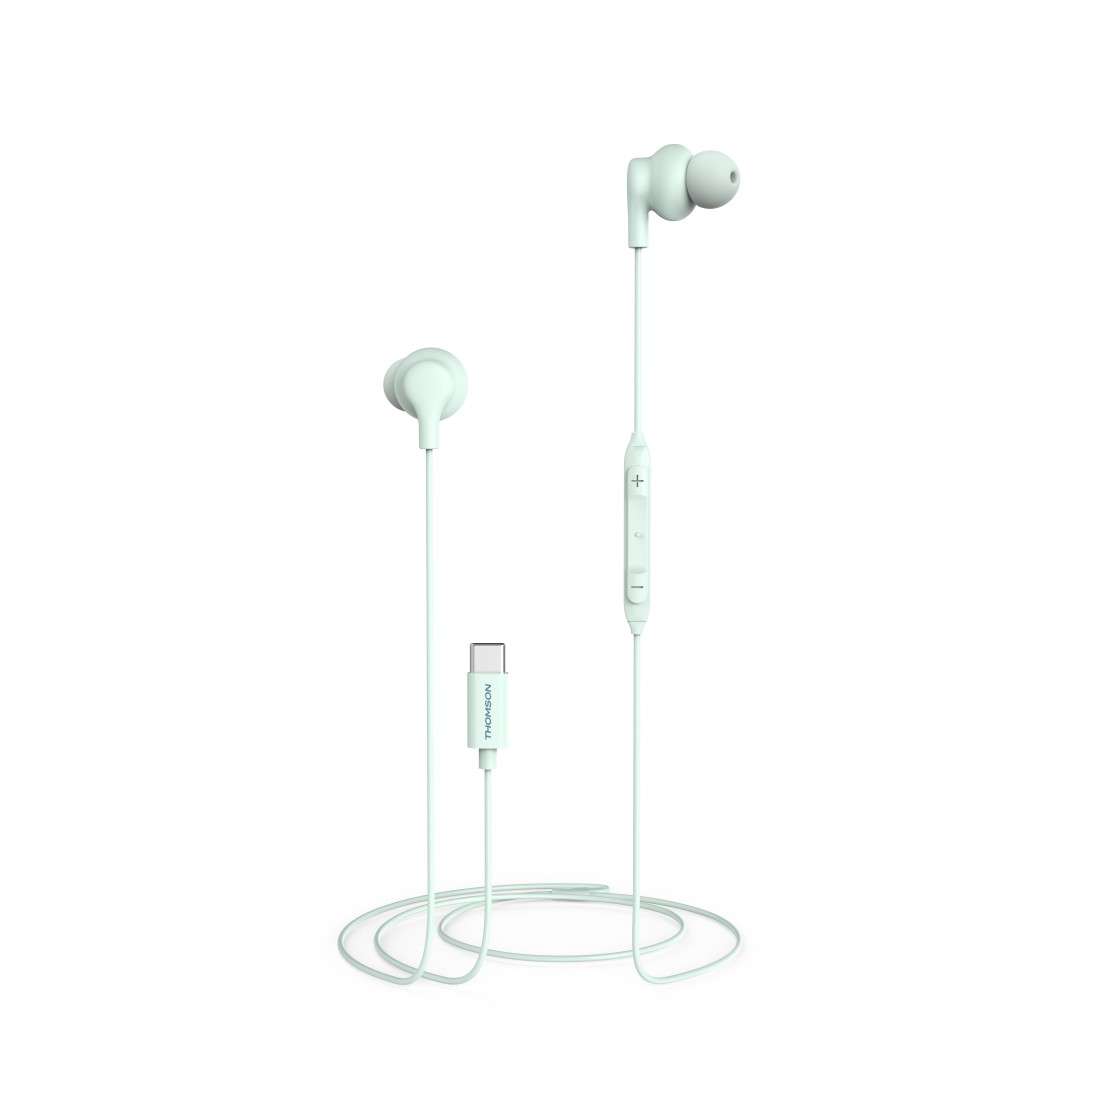 THOMSON (LIZENZMARKE) Kopfhörer, In-Ear, Mikrofon, Kabelknickschutz, USB-C, Türkis